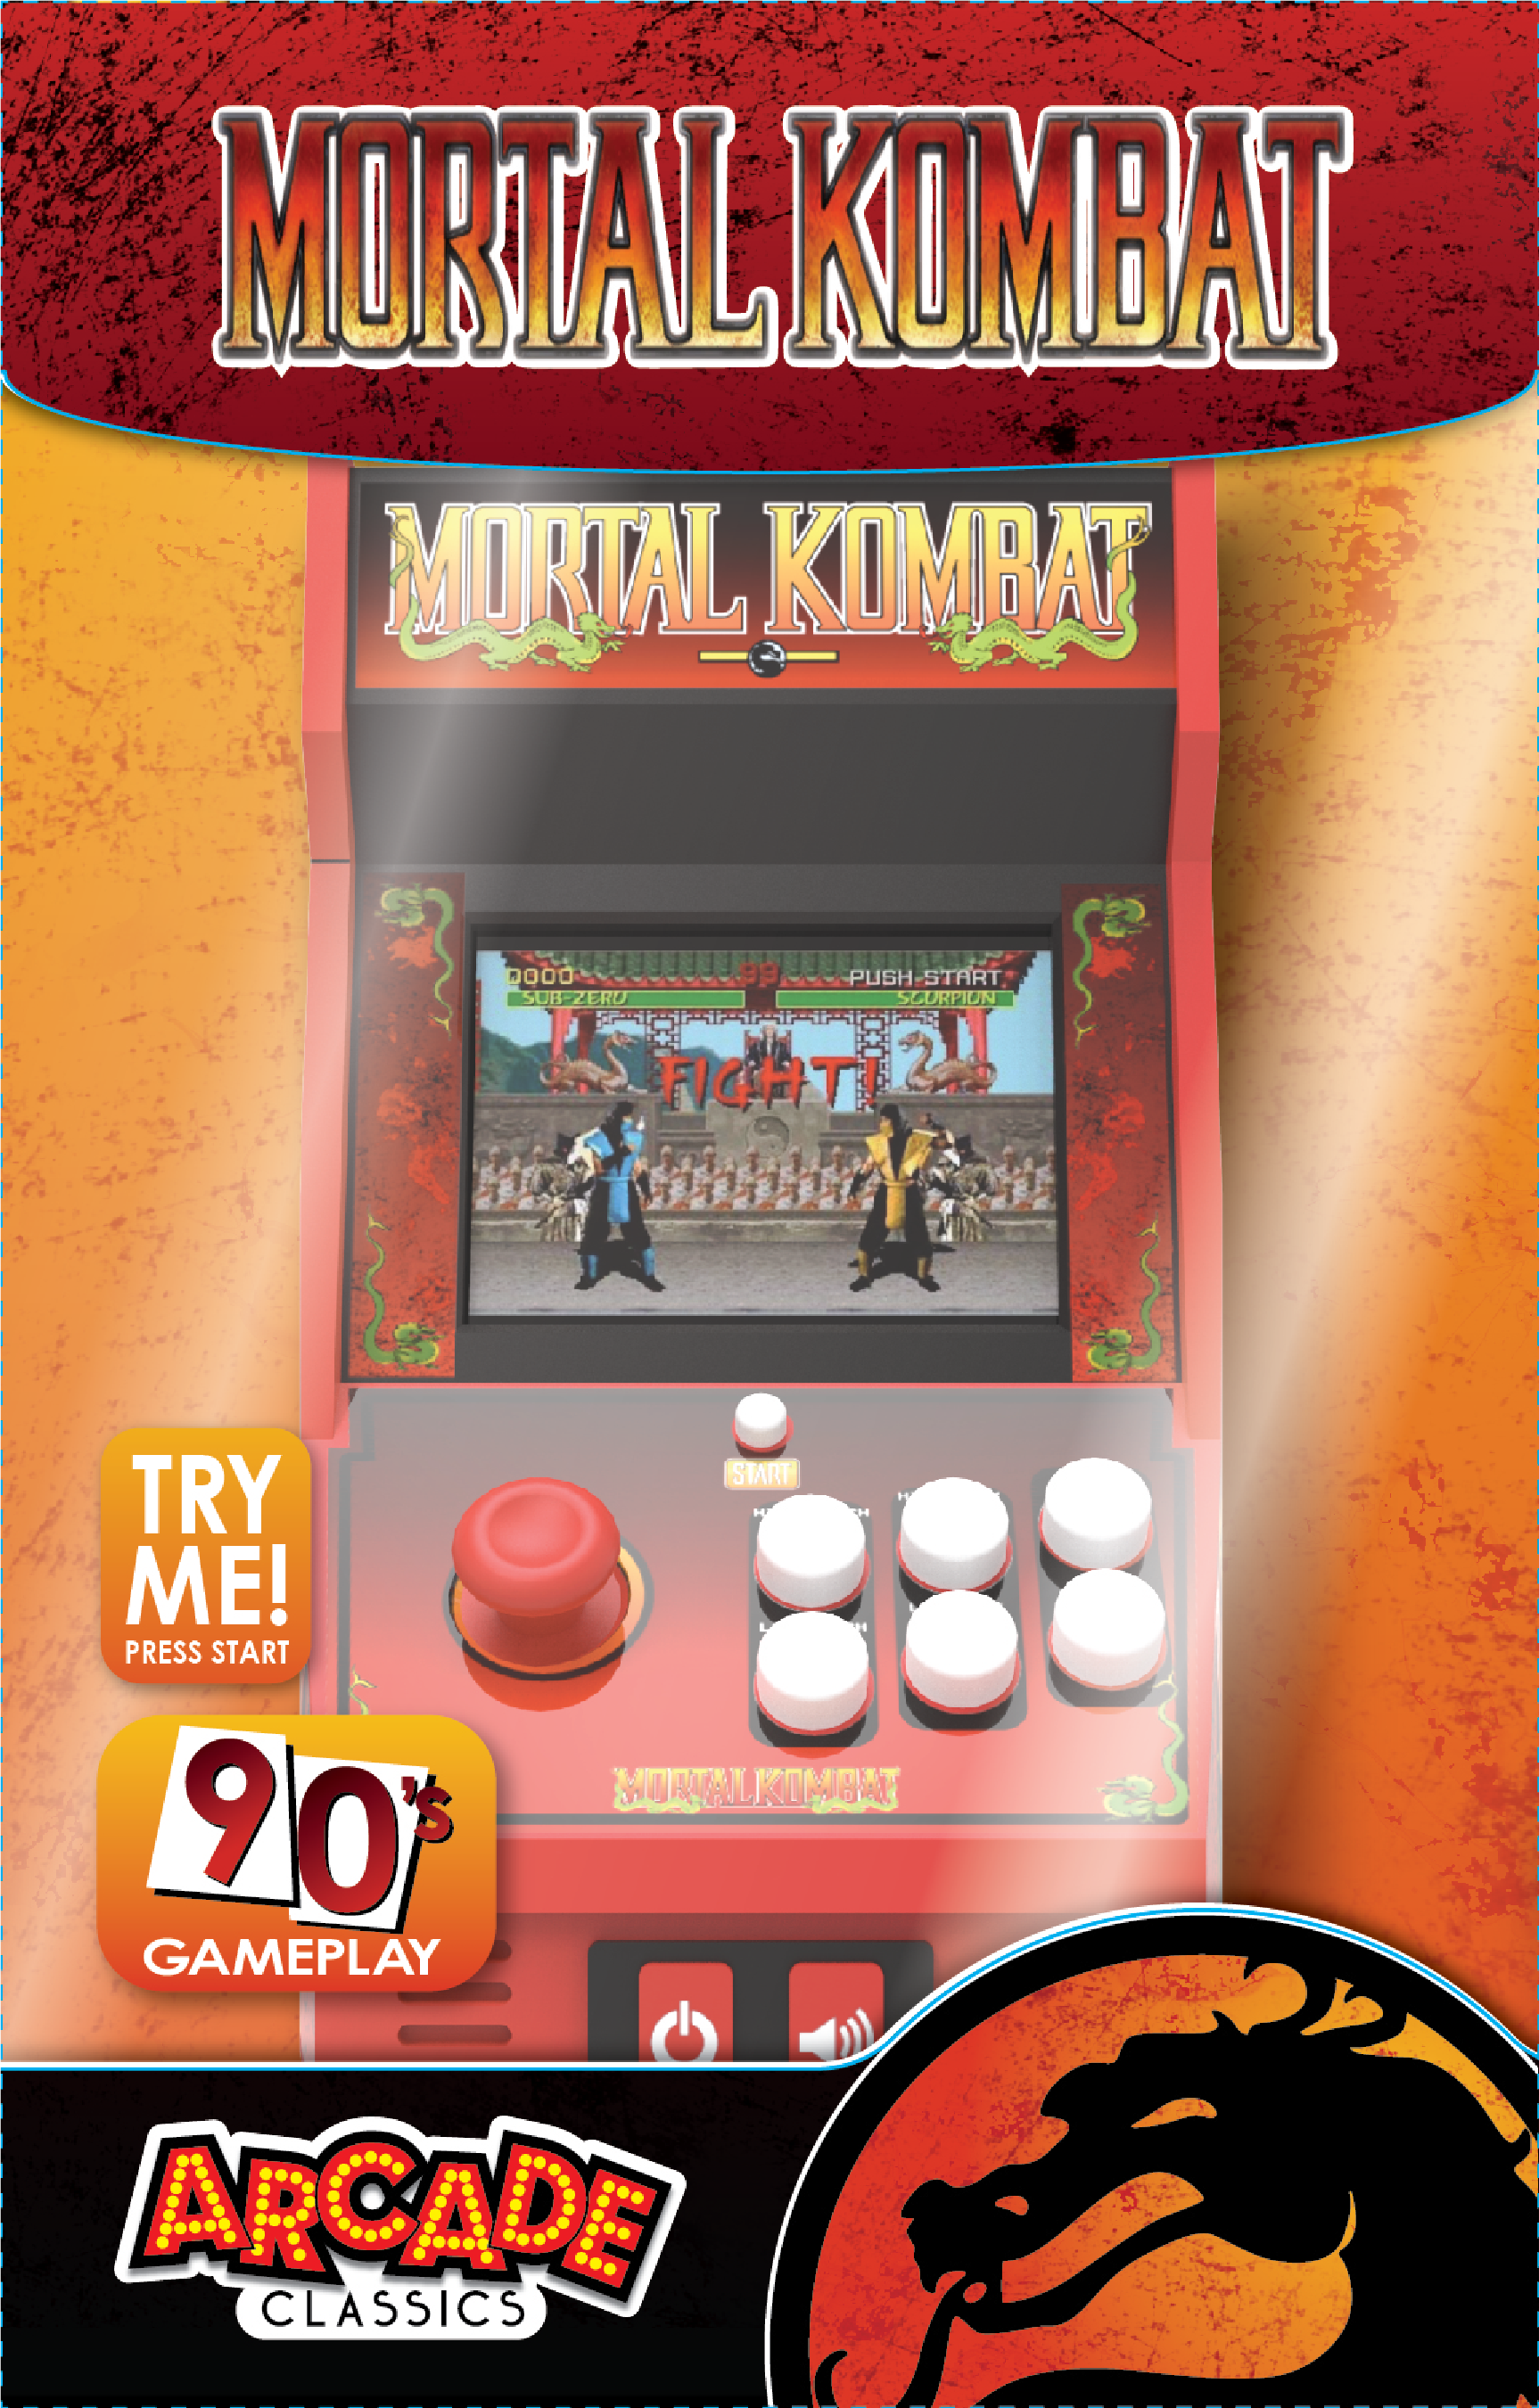 Mortal Kombat - Handheld Arcade Game - Color Screen - image 2 of 11